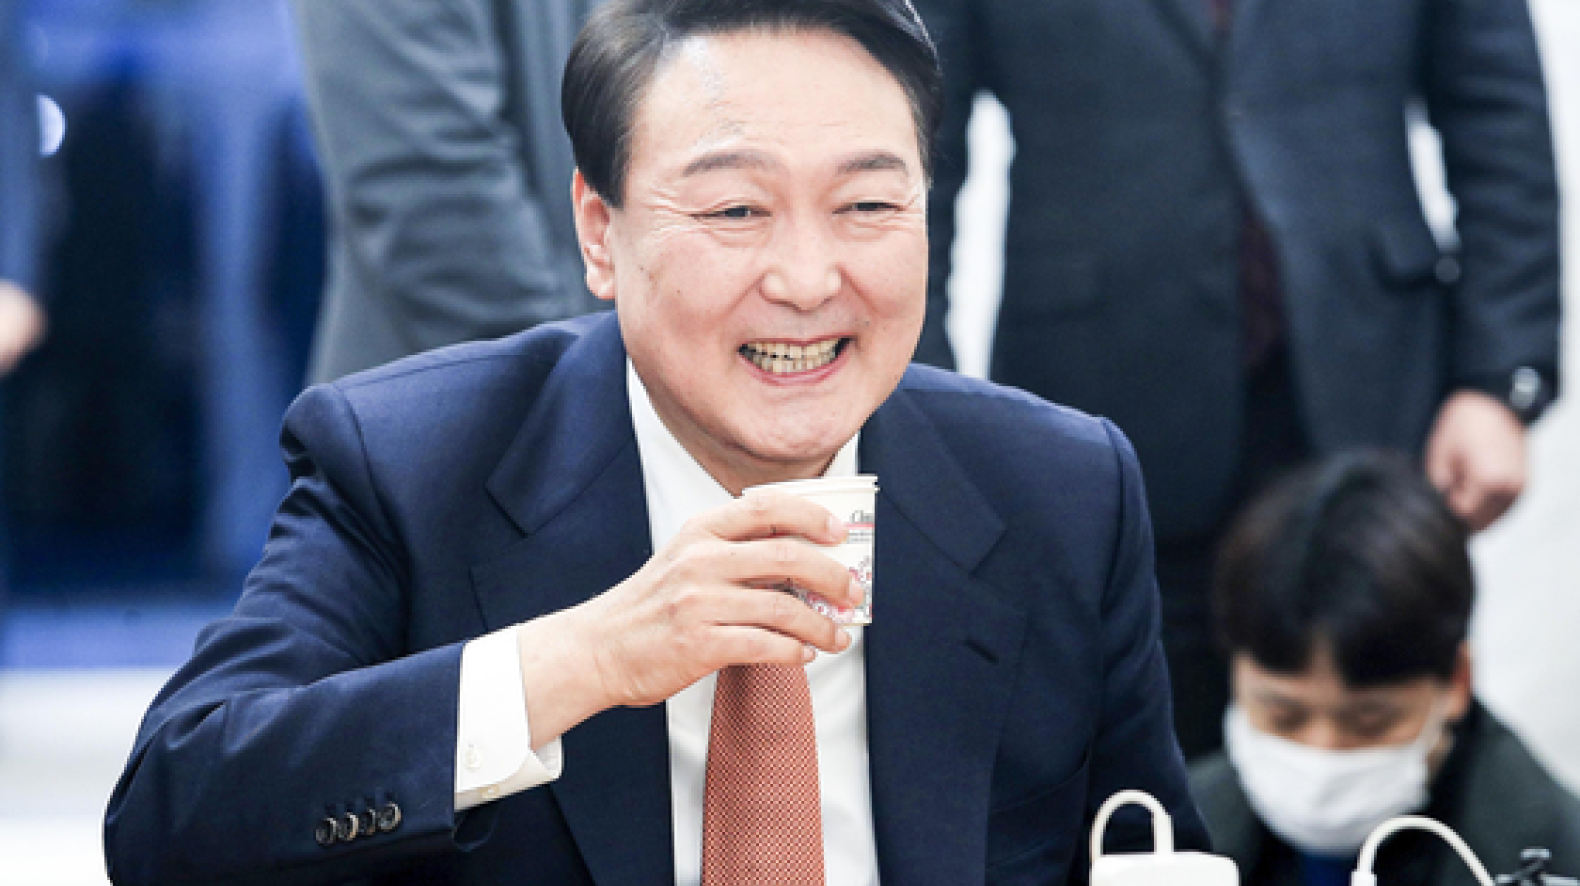 신구권력 충돌 부른 수사지휘권, 4번 모두 민주당 장관이 발동